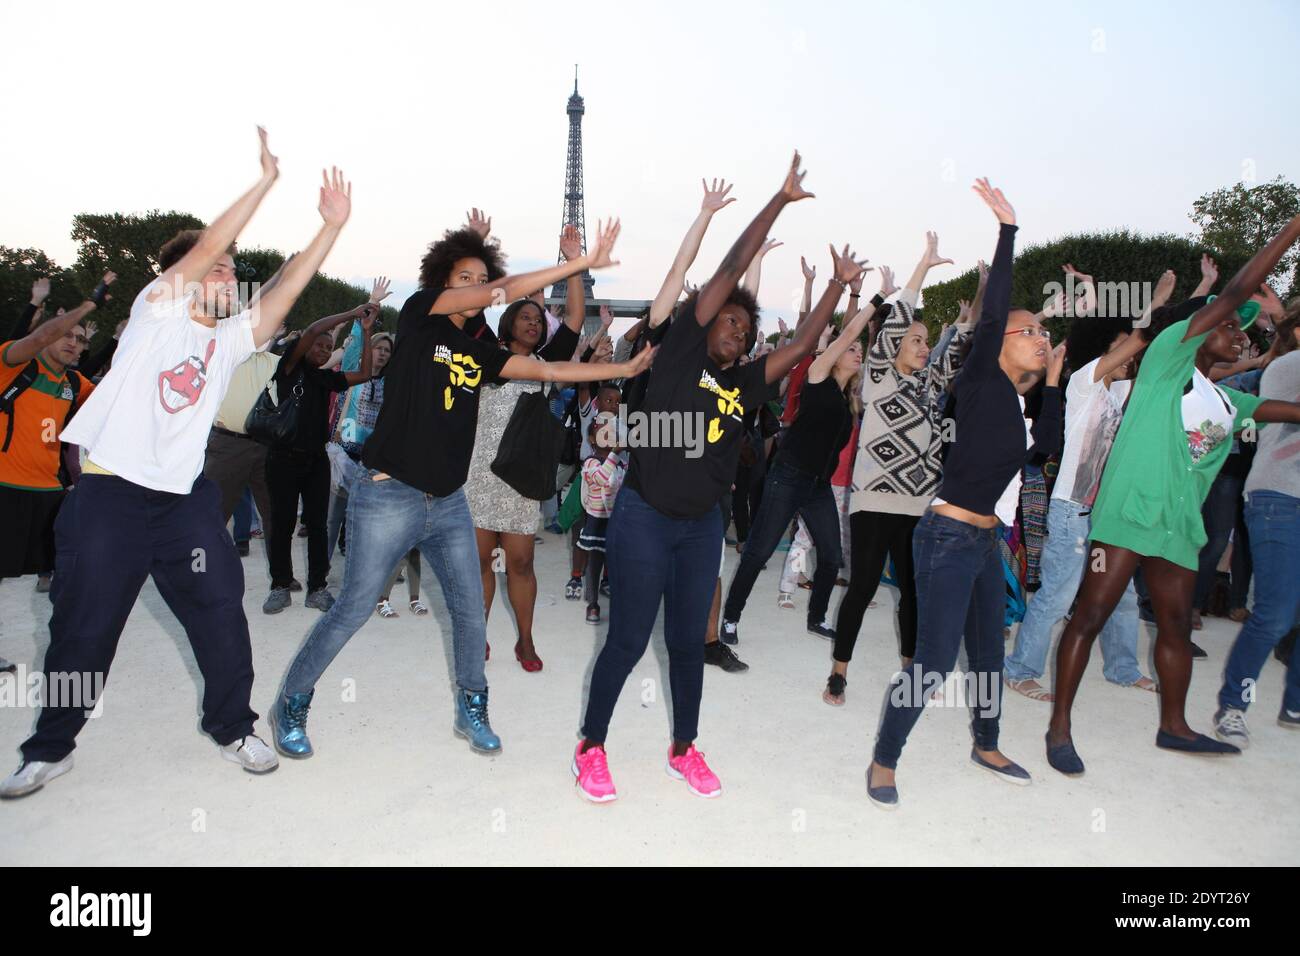 Centinaia di persone si sono riunite di fronte a Mur de la Paix per eseguire un flash MOB organizzato dall'associazione antirazzista 'SOS racisme' in occasione del 50° anniversario del discorso di Martin Luther King 'ho un sogno', a Parigi, in Francia, il 28 agosto 2013. Foto di Audrey Poree/ABACAPRESS.COM Foto Stock